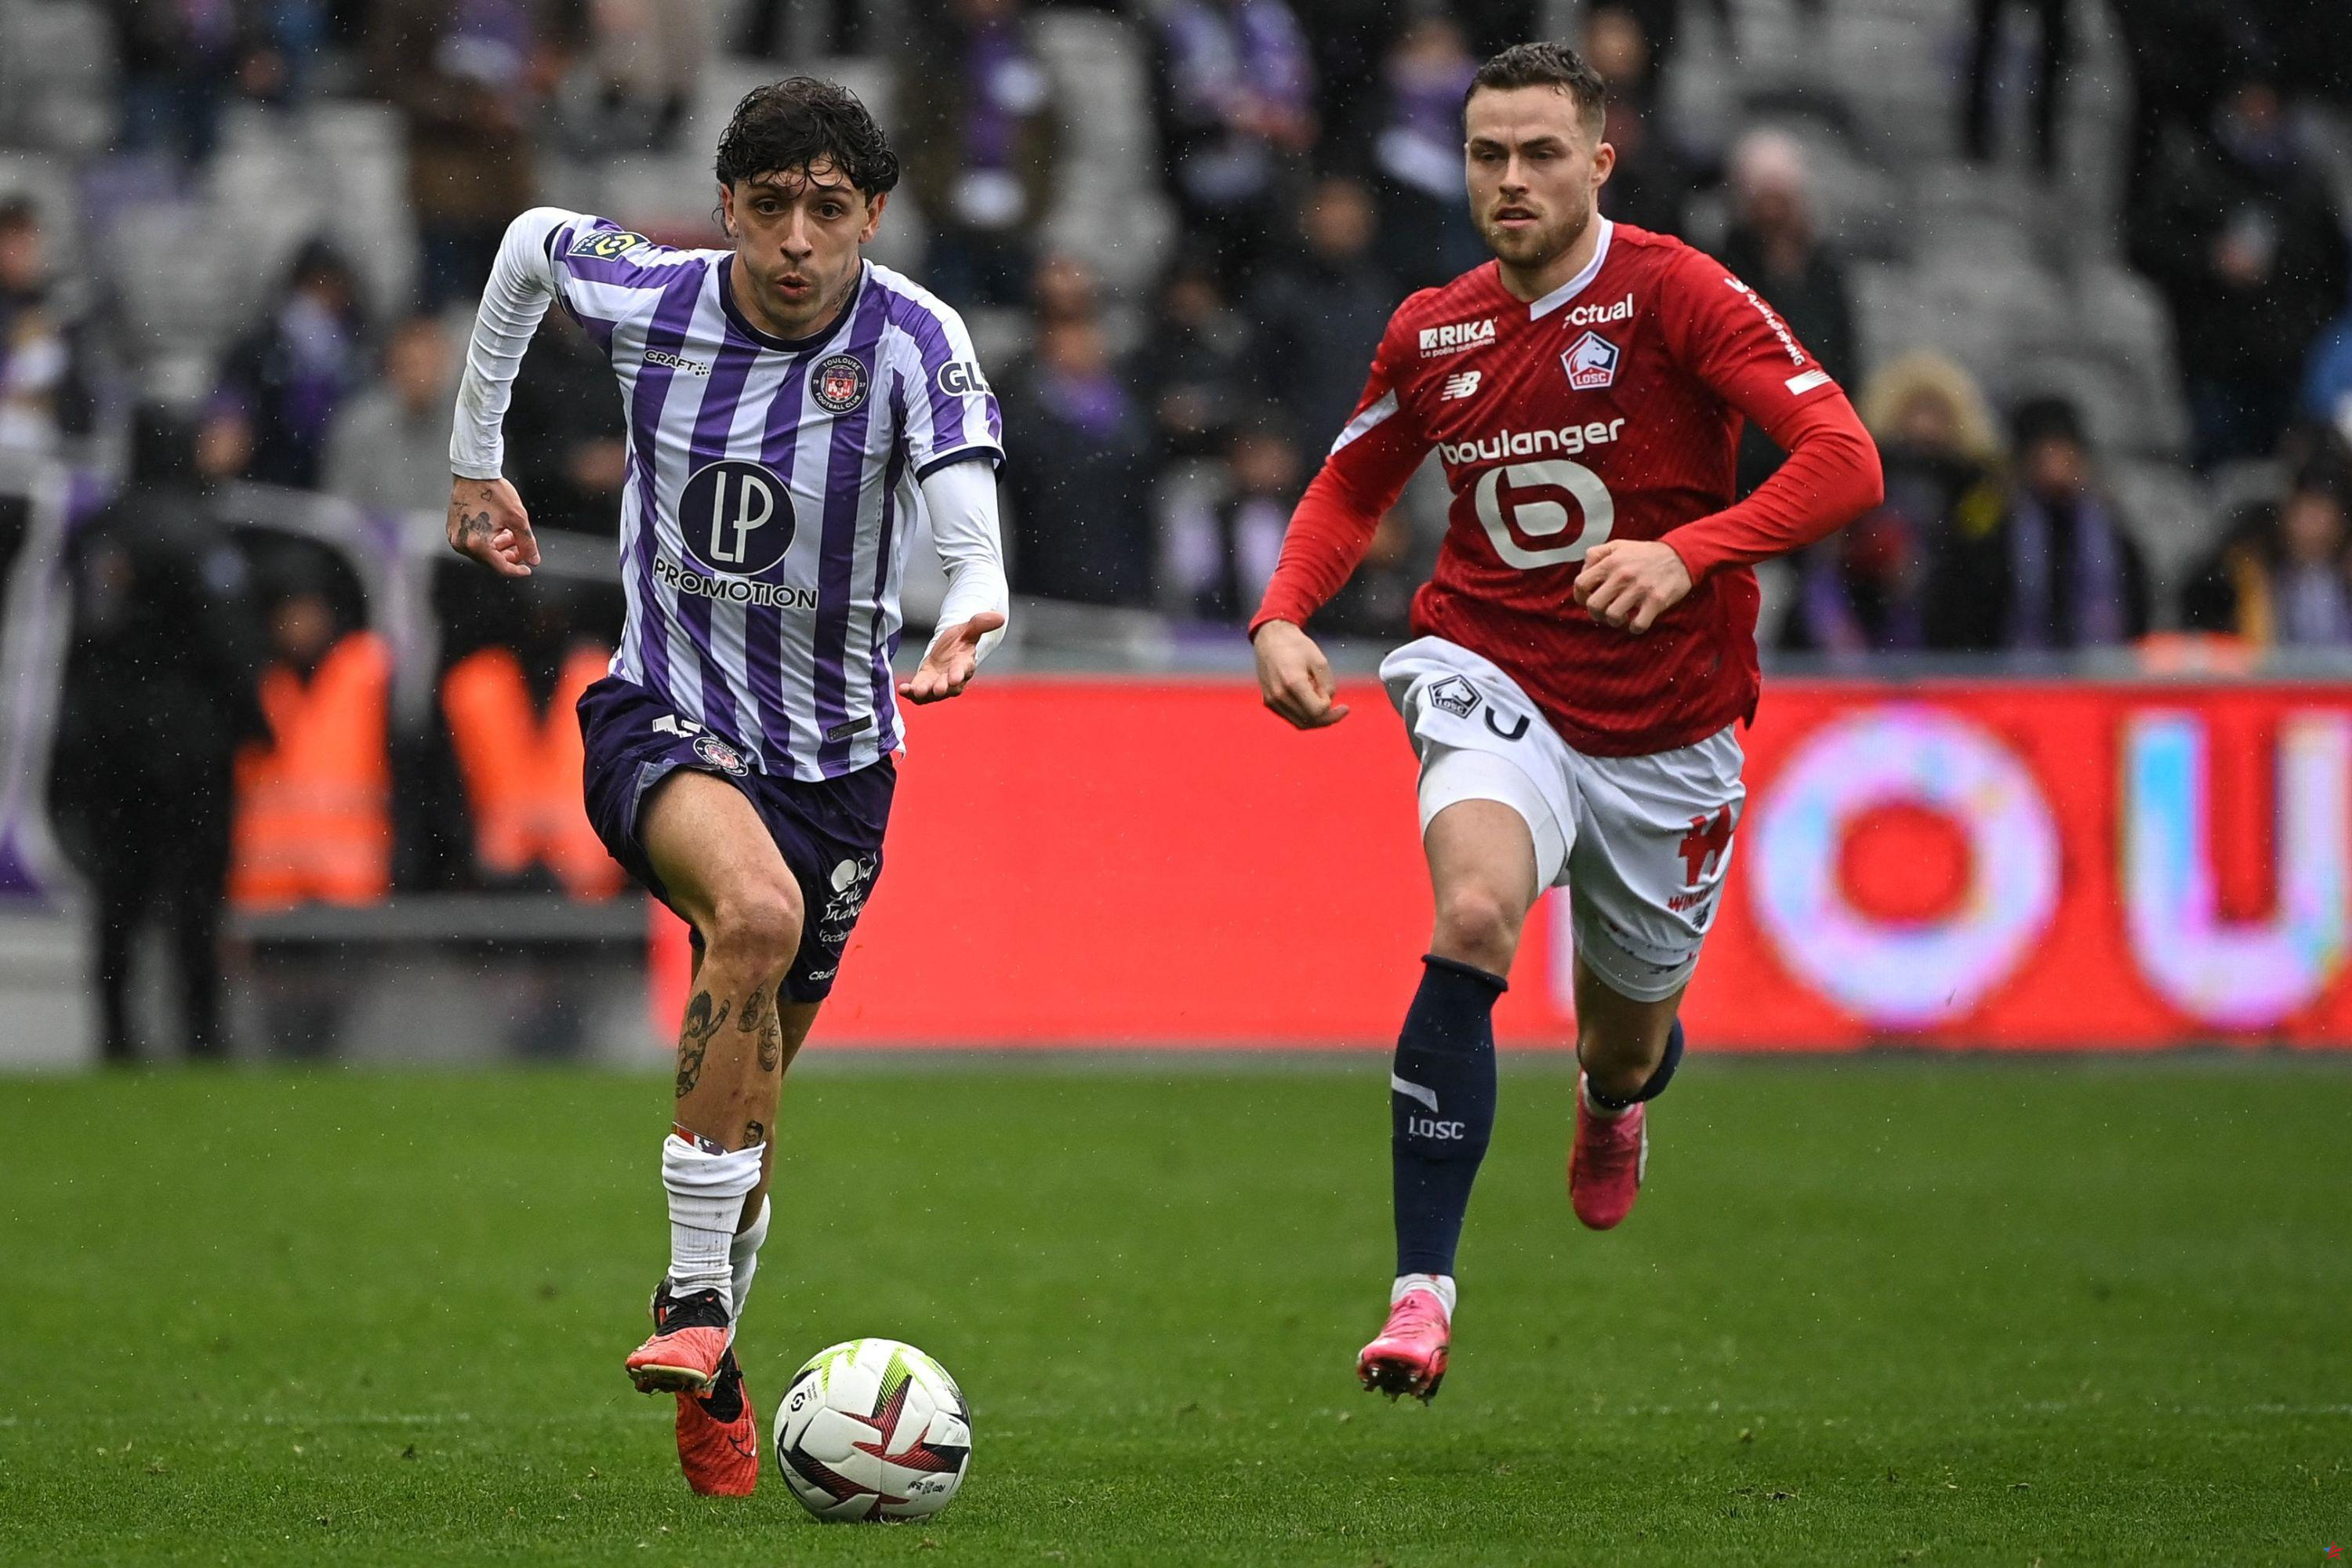 Ligue 1: Toulouse impresionante, Reims milagroso